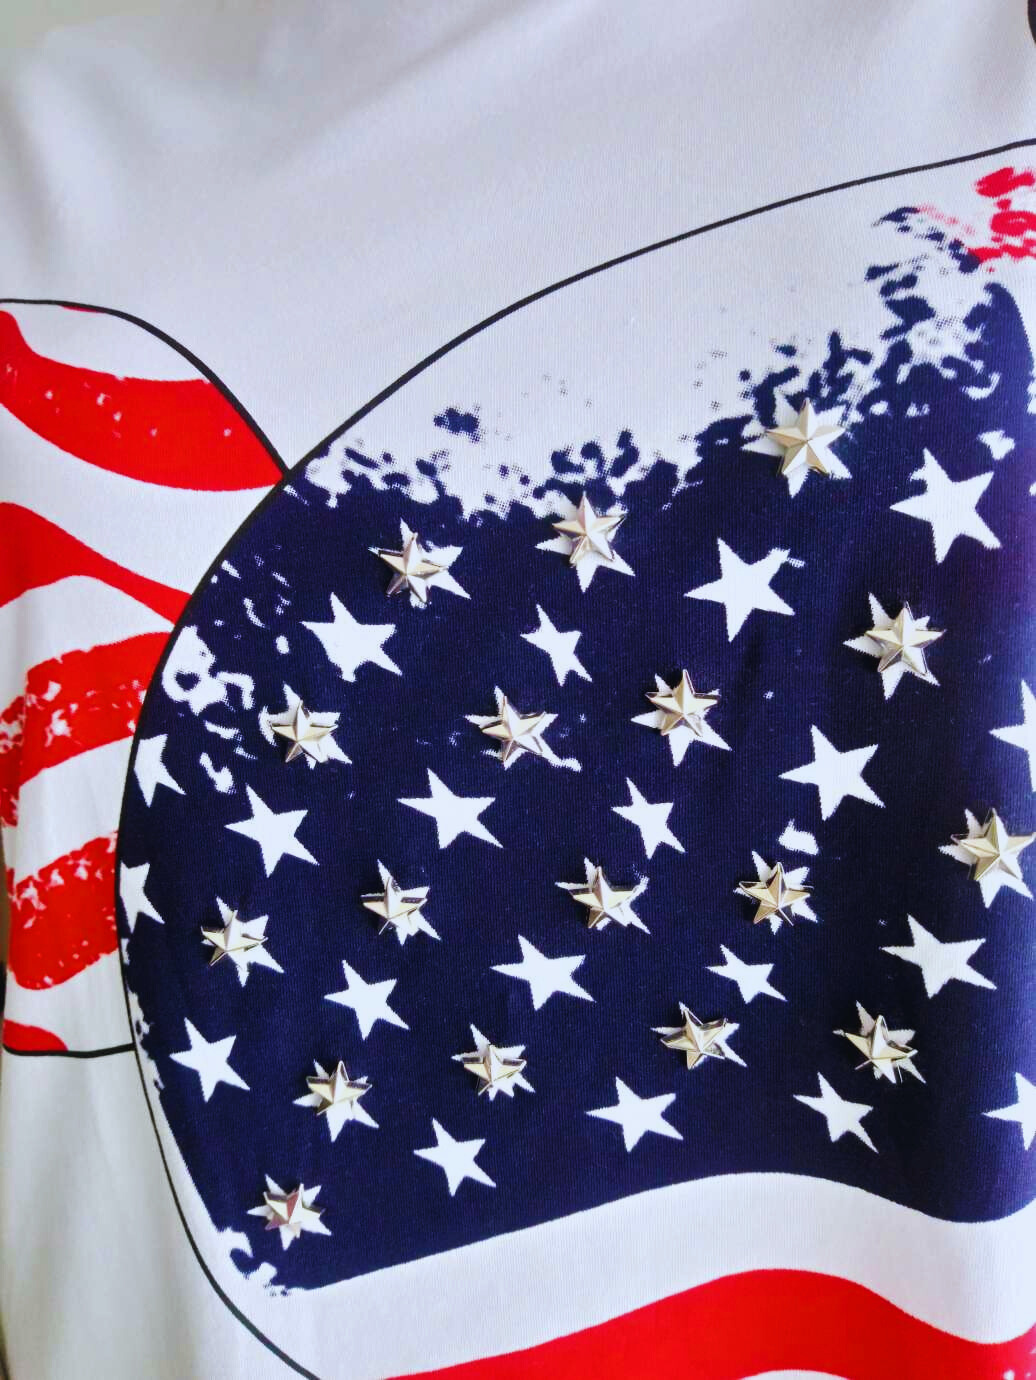 Robe T-shirt BLANCHE à l'effigie du drapeau américain